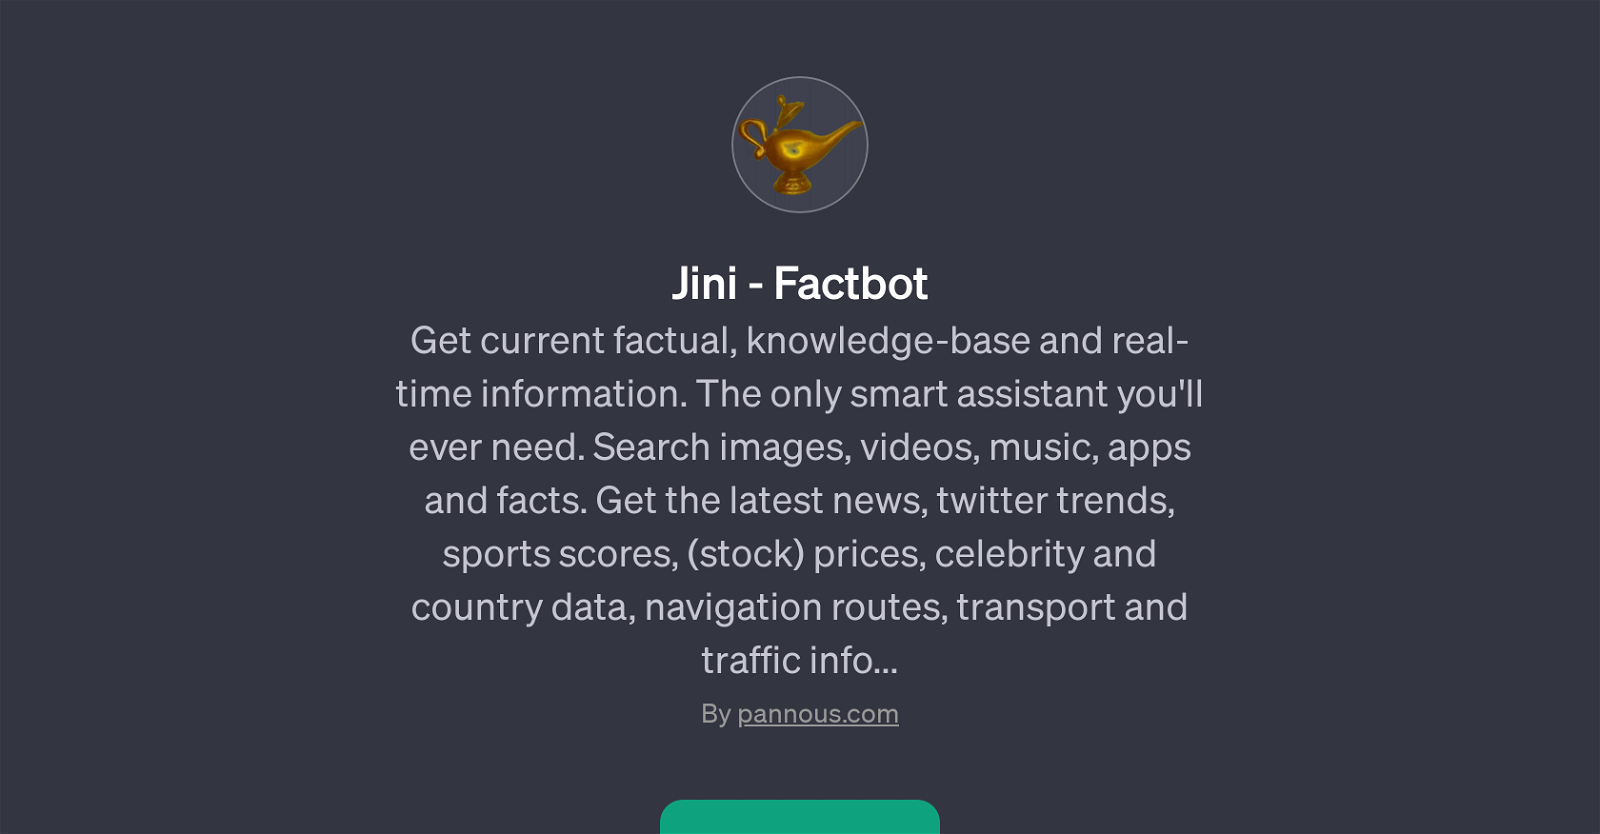 Jini - Factbot website